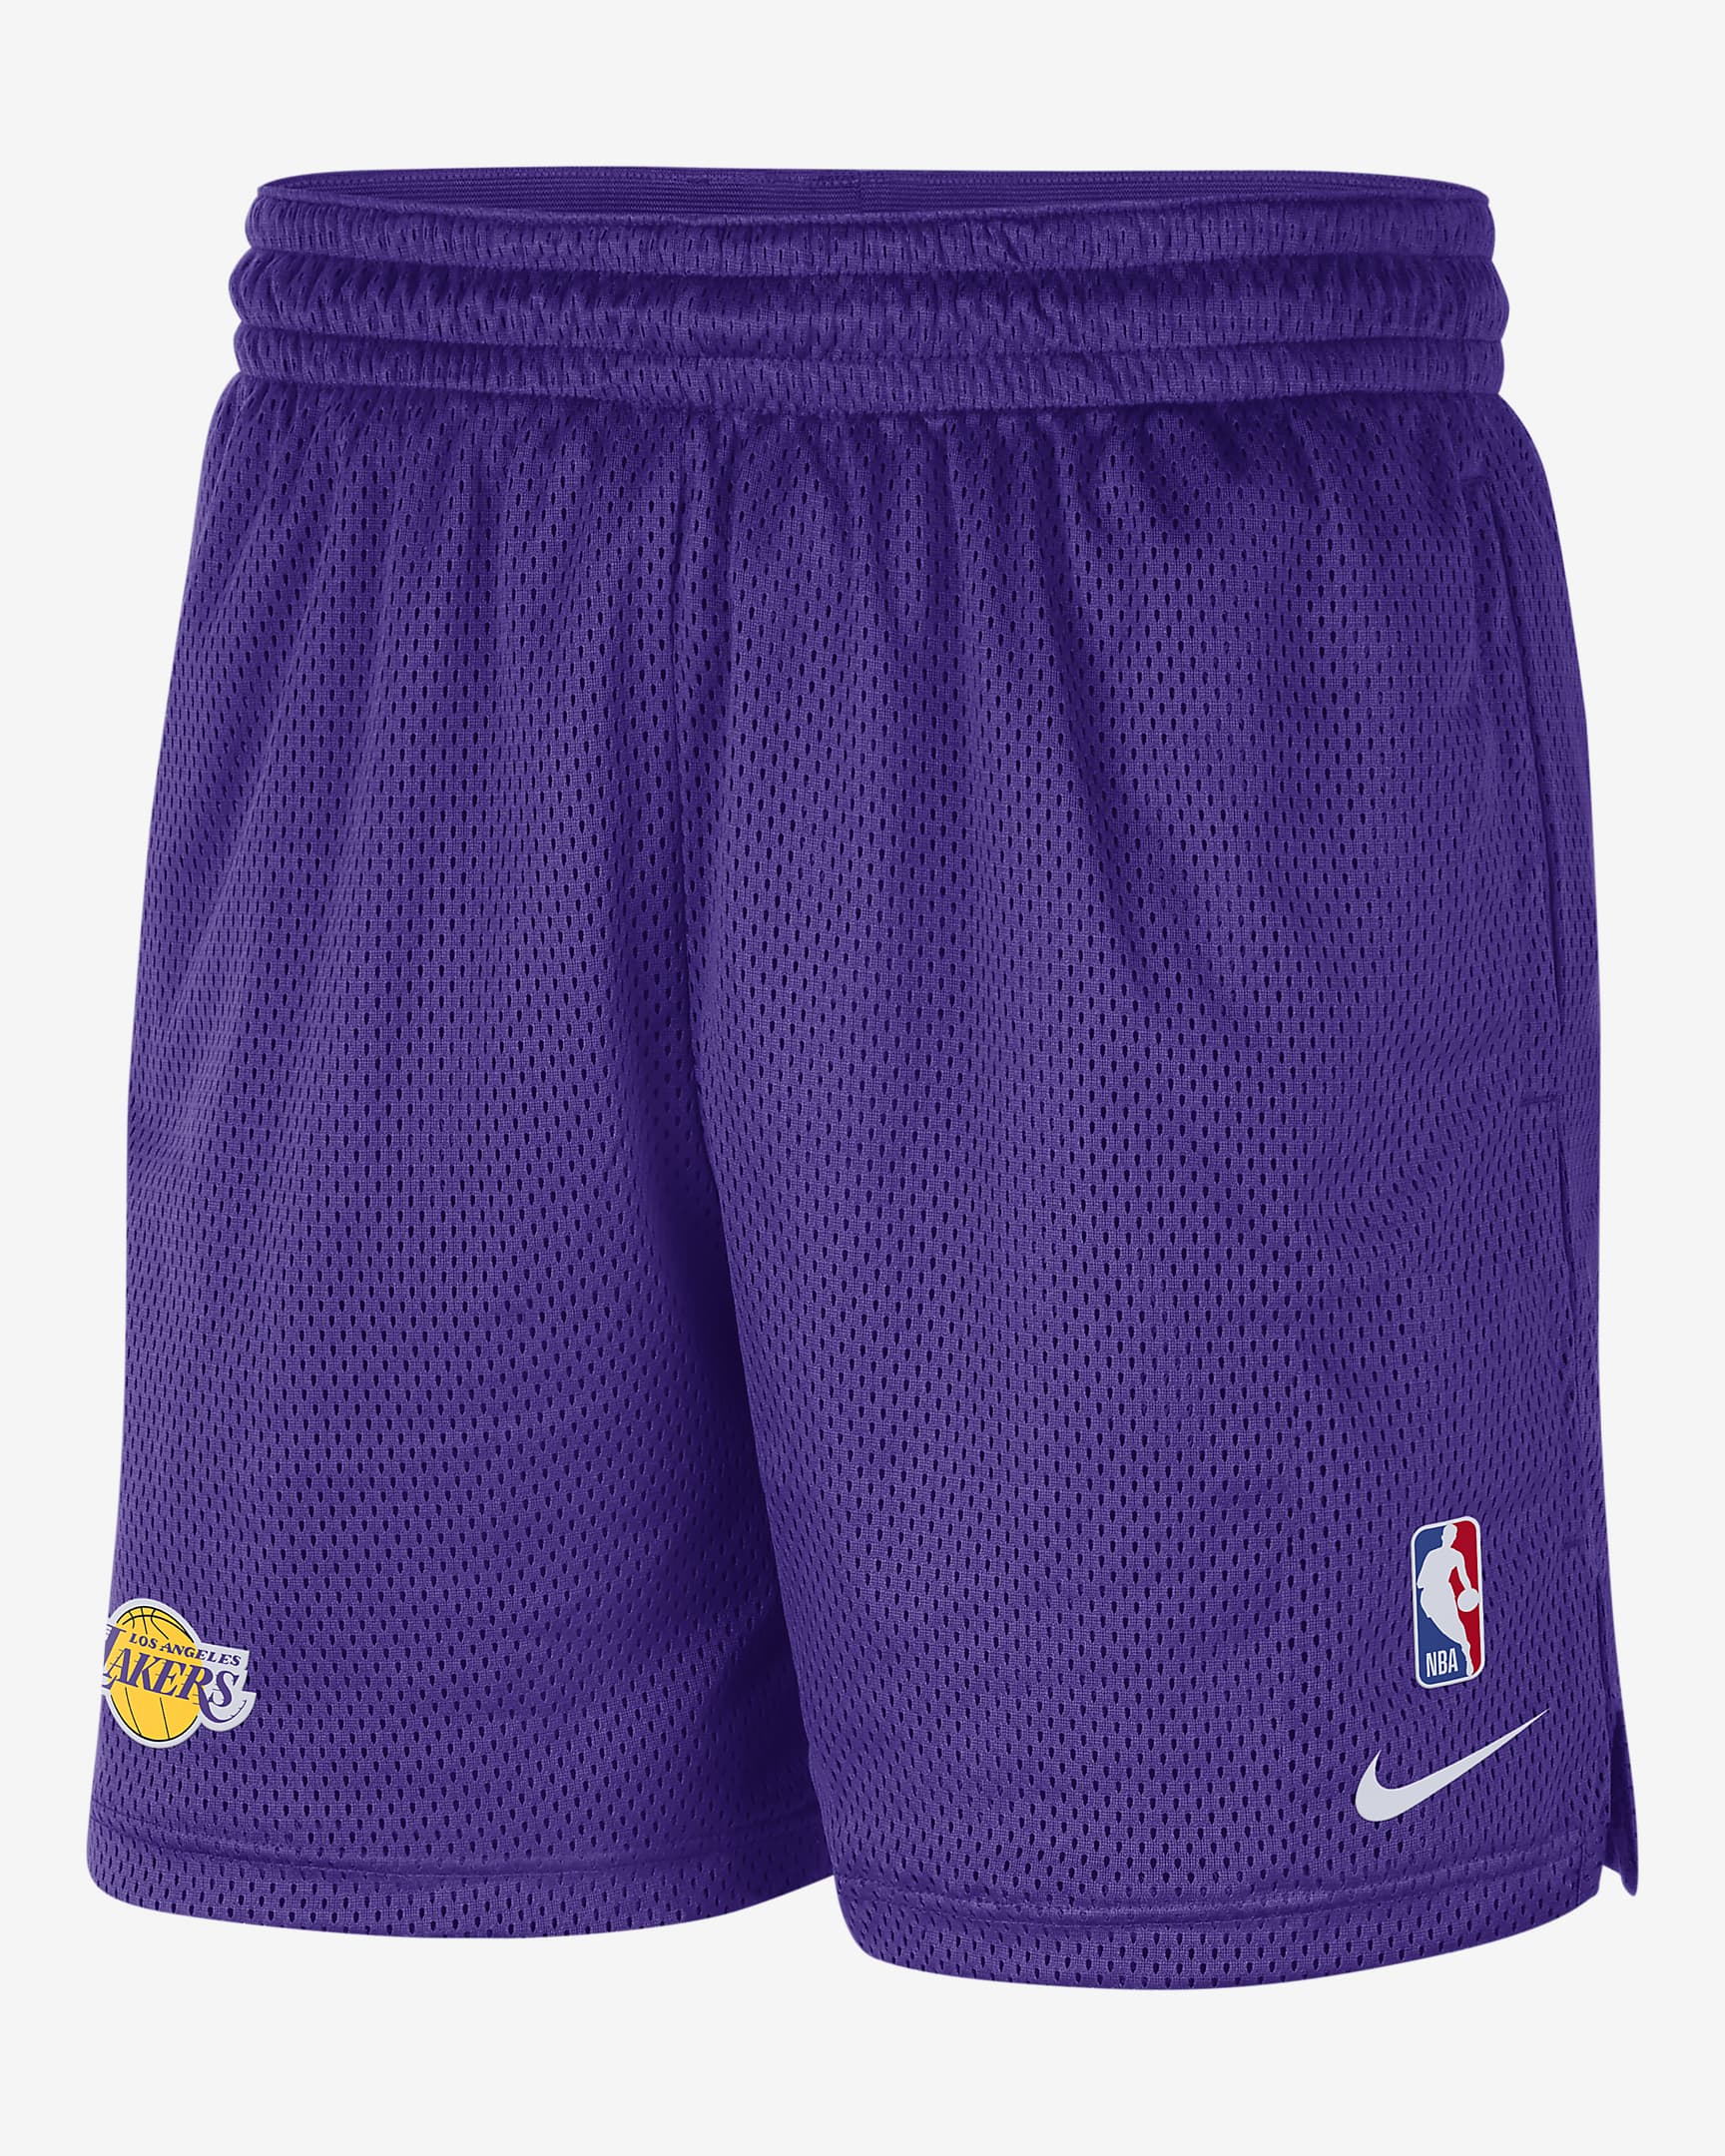 Los Angeles Lakers Mens Nike Nba Shorts 